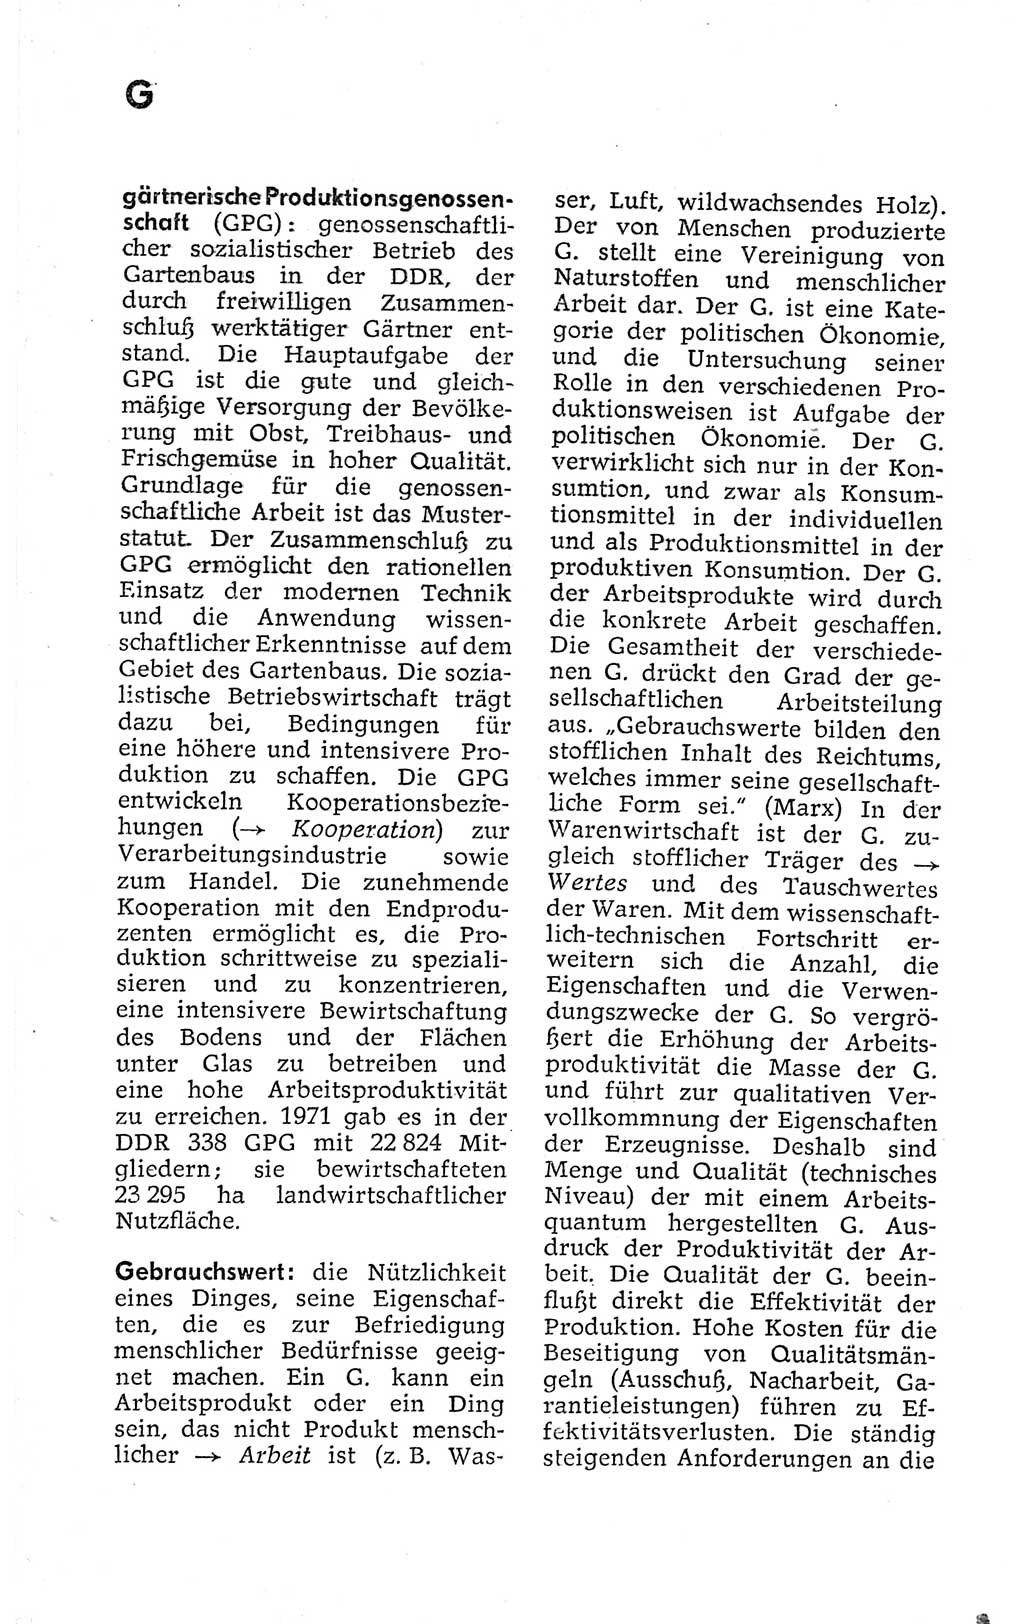 Kleines politisches Wörterbuch [Deutsche Demokratische Republik (DDR)] 1973, Seite 248 (Kl. pol. Wb. DDR 1973, S. 248)